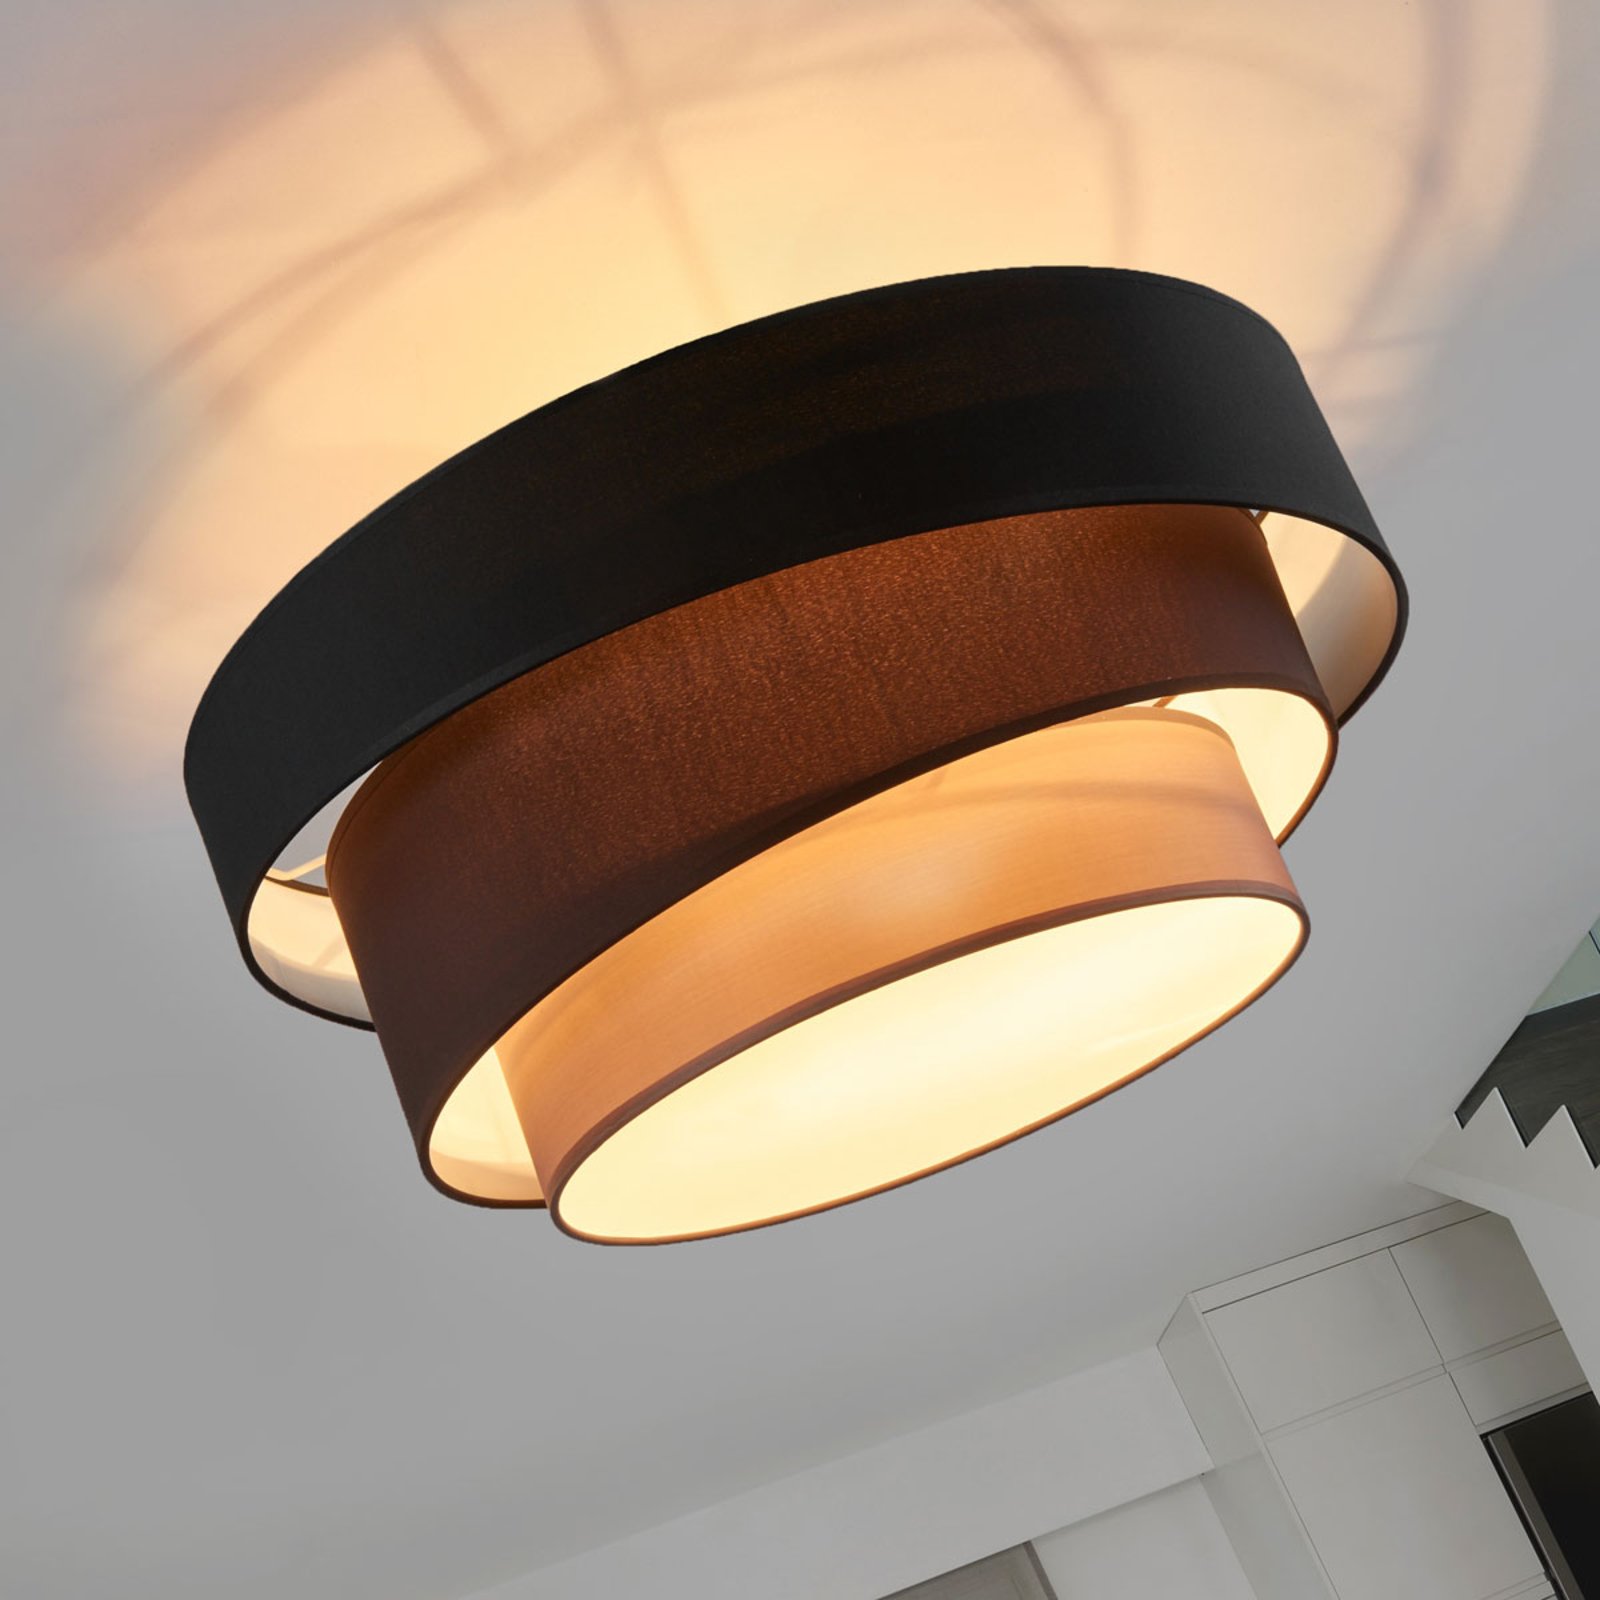 Tiltalende loftslampe Melia, sort og brun